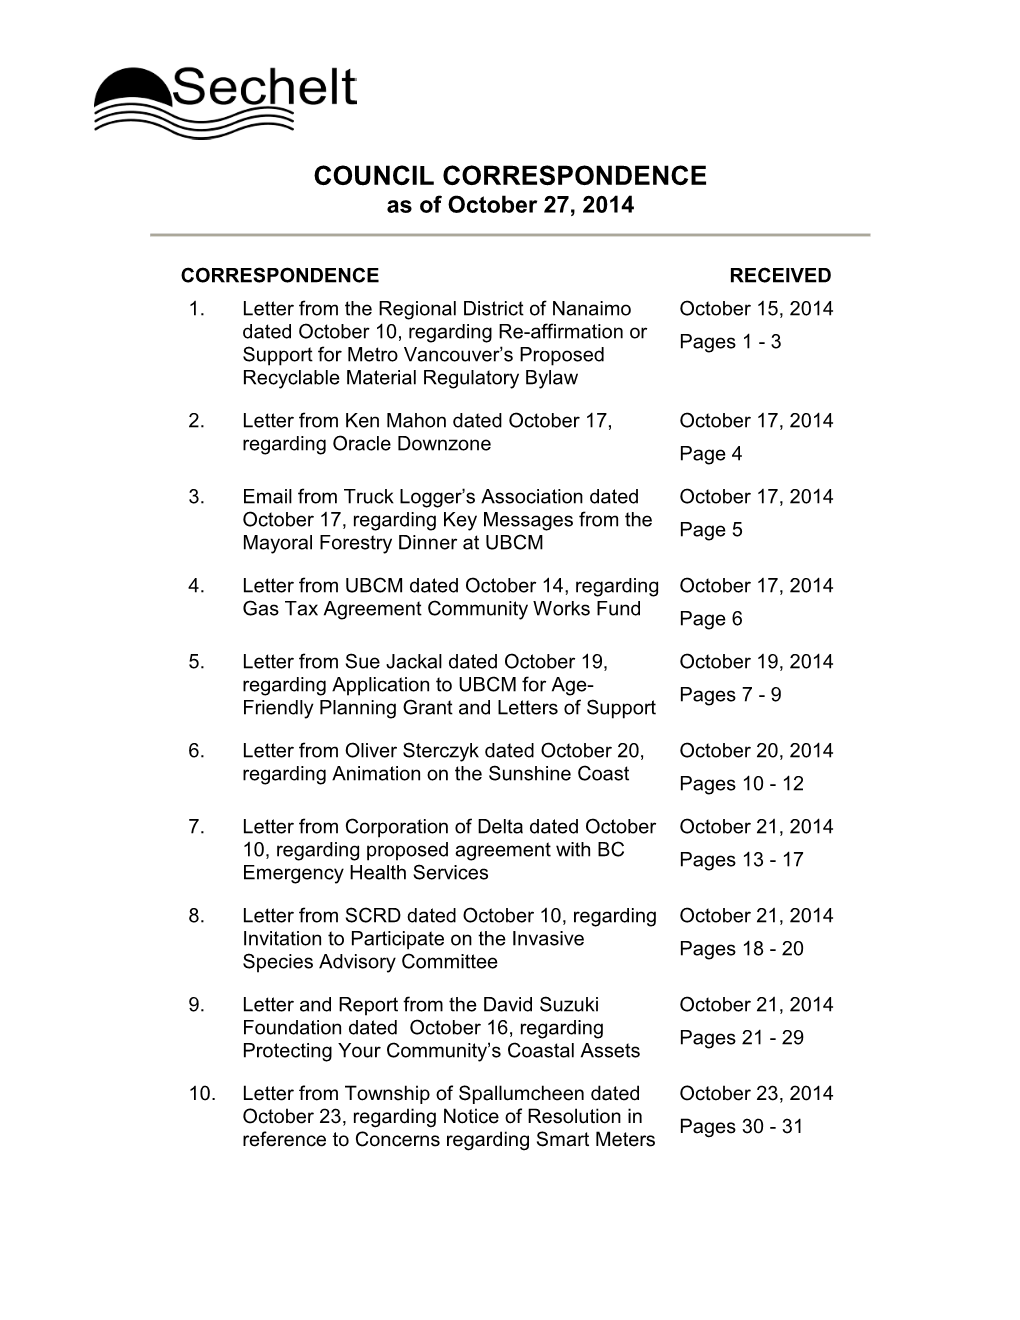 COUNCIL CORRESPONDENCE As of October 27, 2014